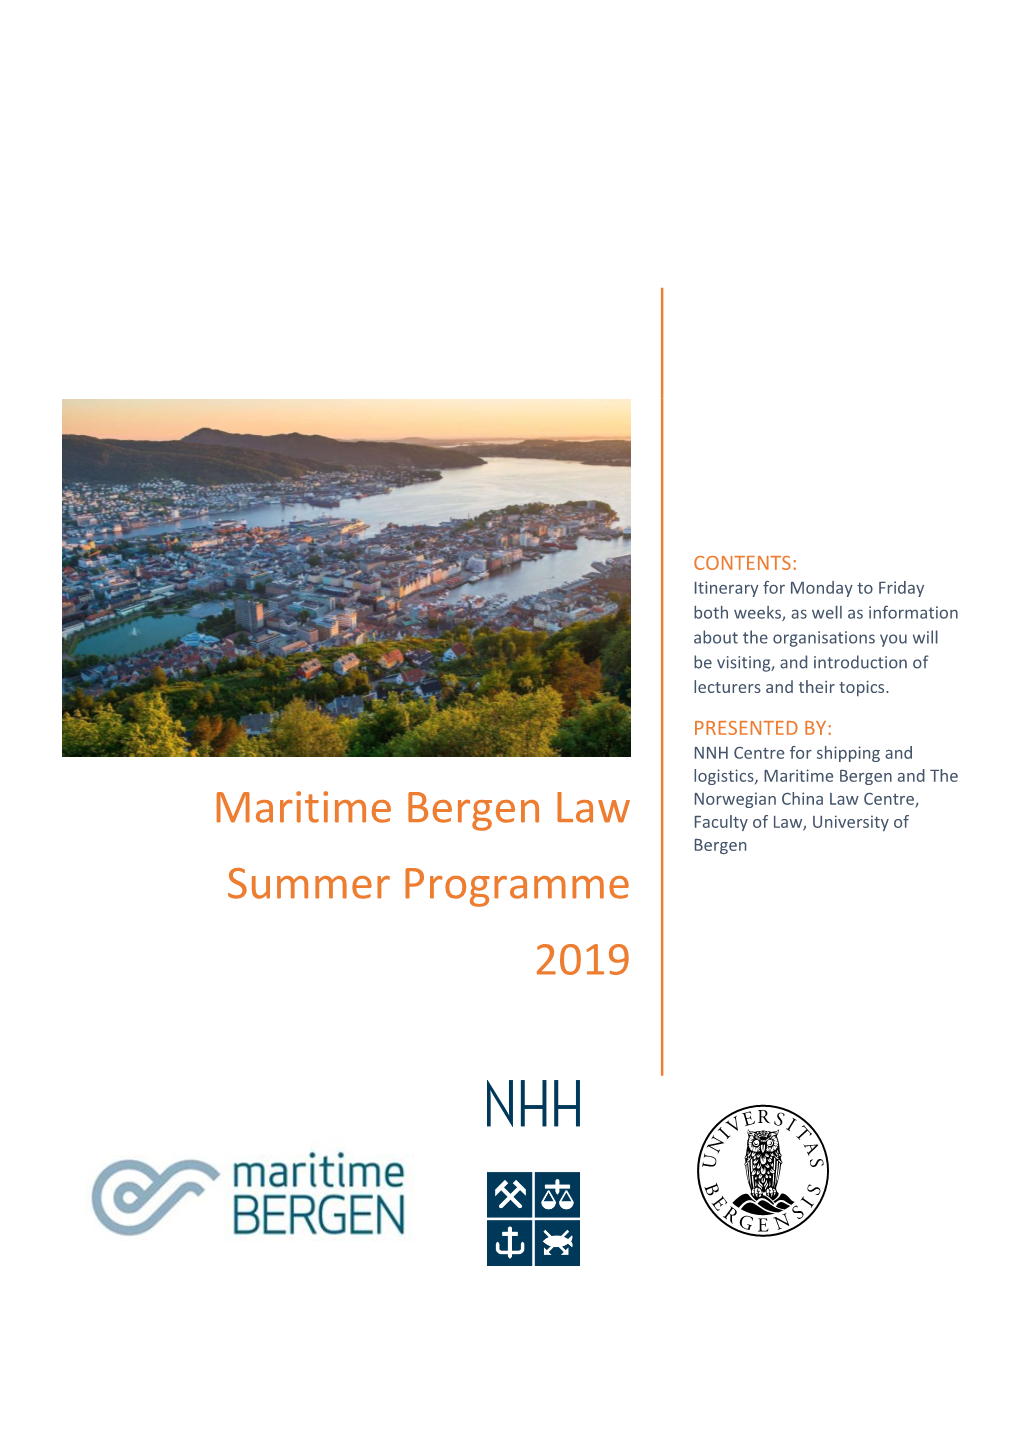 Maritime Bergen Law Summer Programme